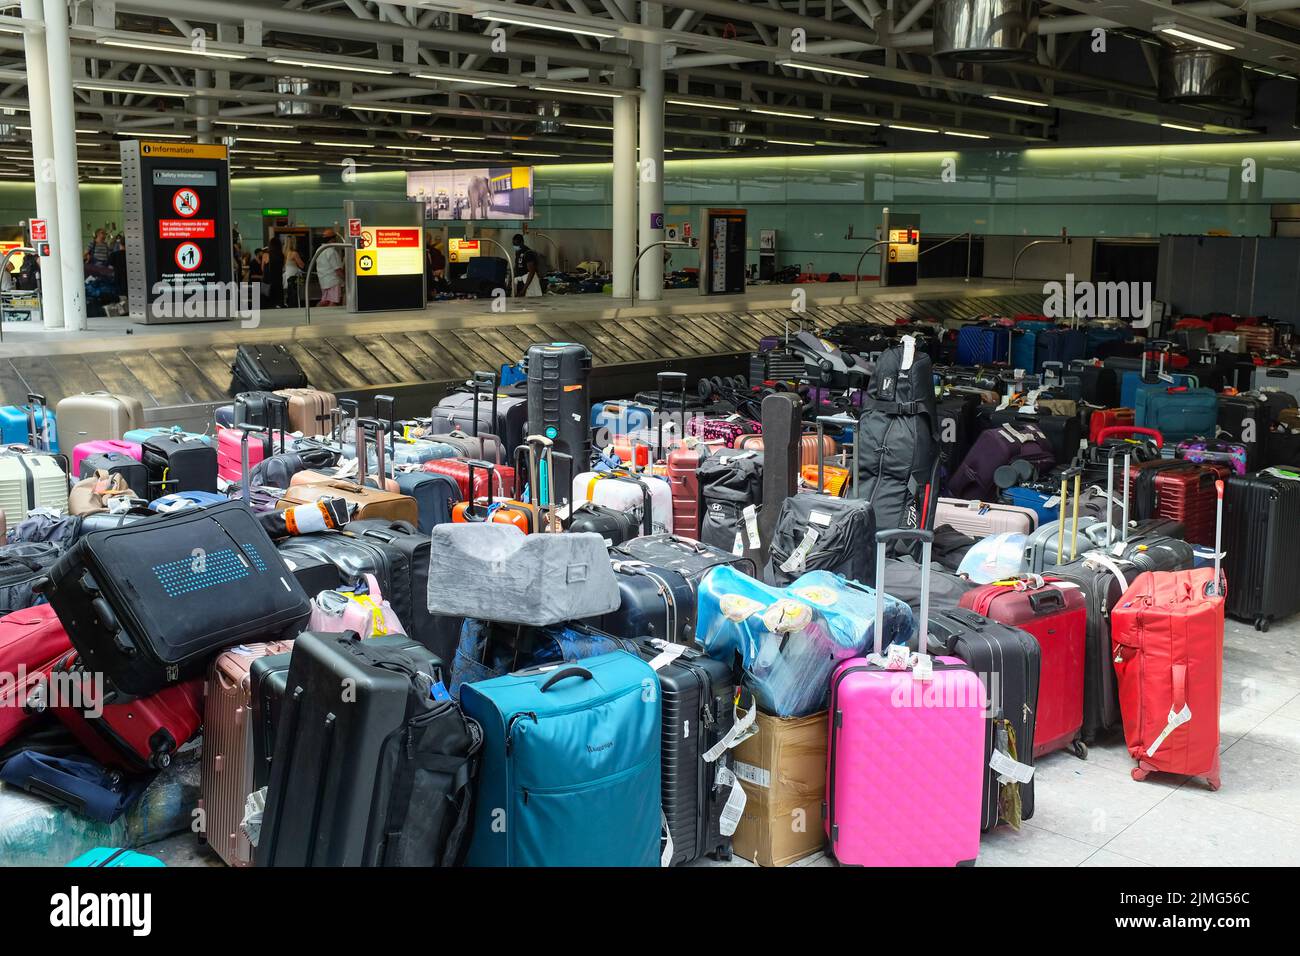 Alcune delle cosiddette "montagne dei bagagli" che hanno accolto i viaggiatori in arrivo all'aeroporto Heathrow di Londra nel luglio 2022. Foto Stock